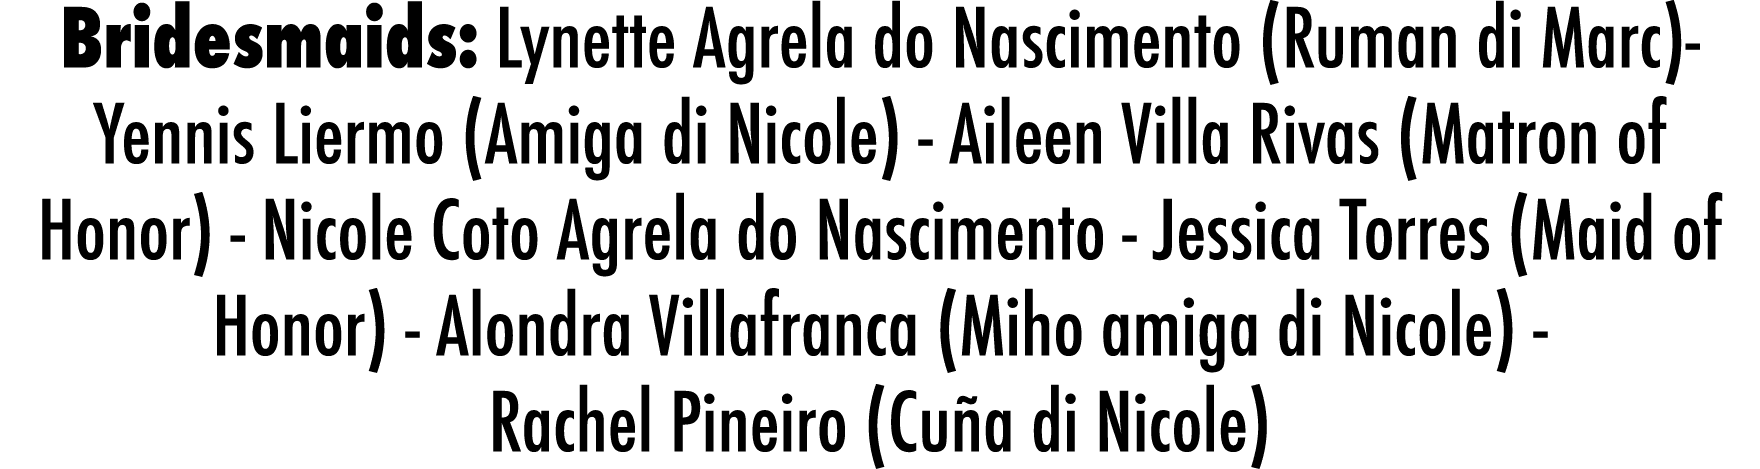 Bridesmaids: Lynette Agrela do Nascimento (Ruman di Marc)- Yennis Liermo (Amiga di Nicole) - Aileen Villa Rivas (Matr   